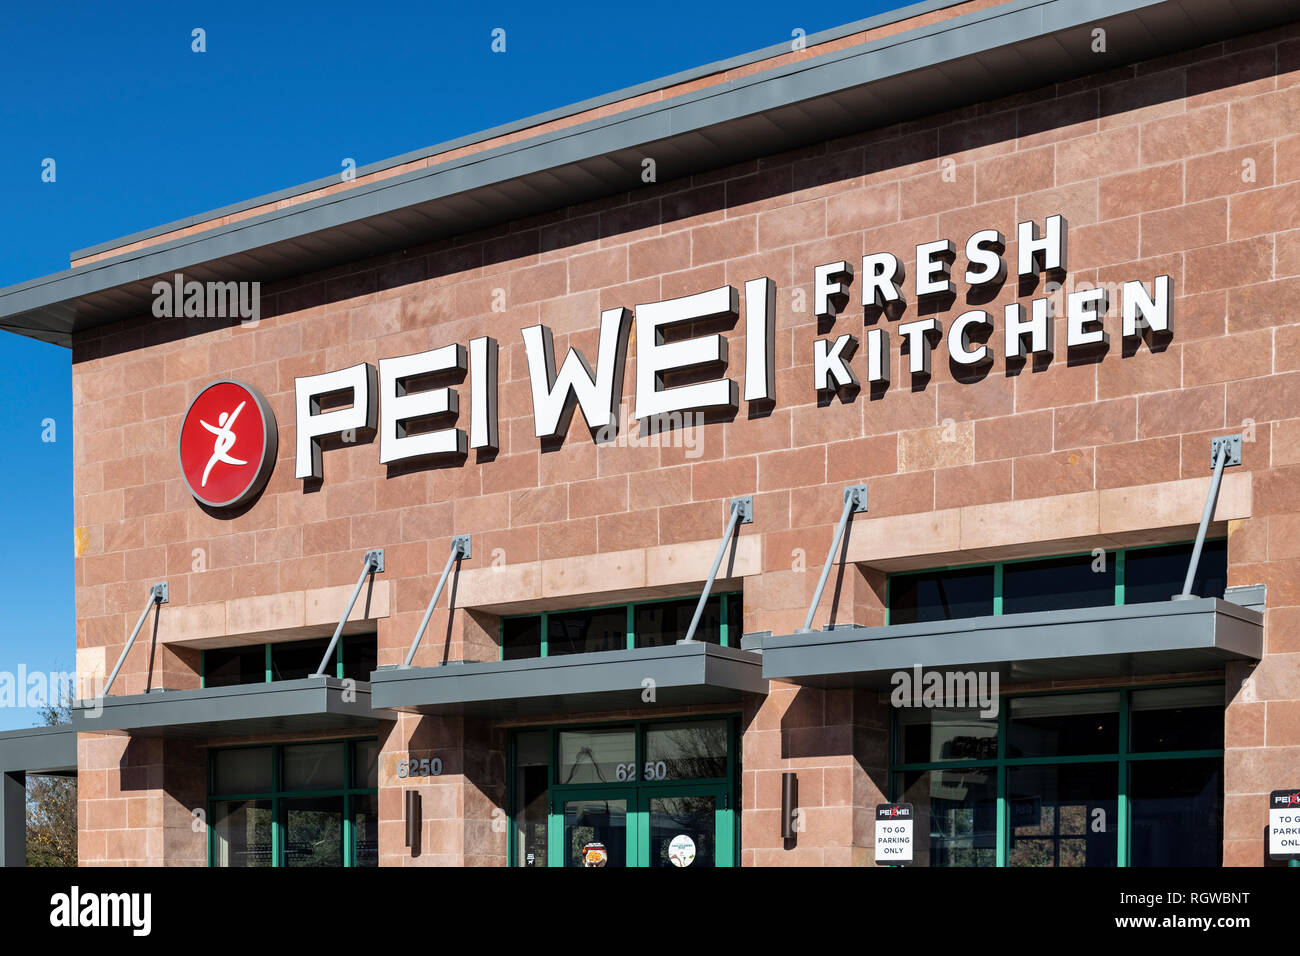 Pei Wei cocina asiática americana es una cadena de restaurantes que sirven platos asiáticos Pan, Kissimmee, Florida, EE.UU. Foto de stock